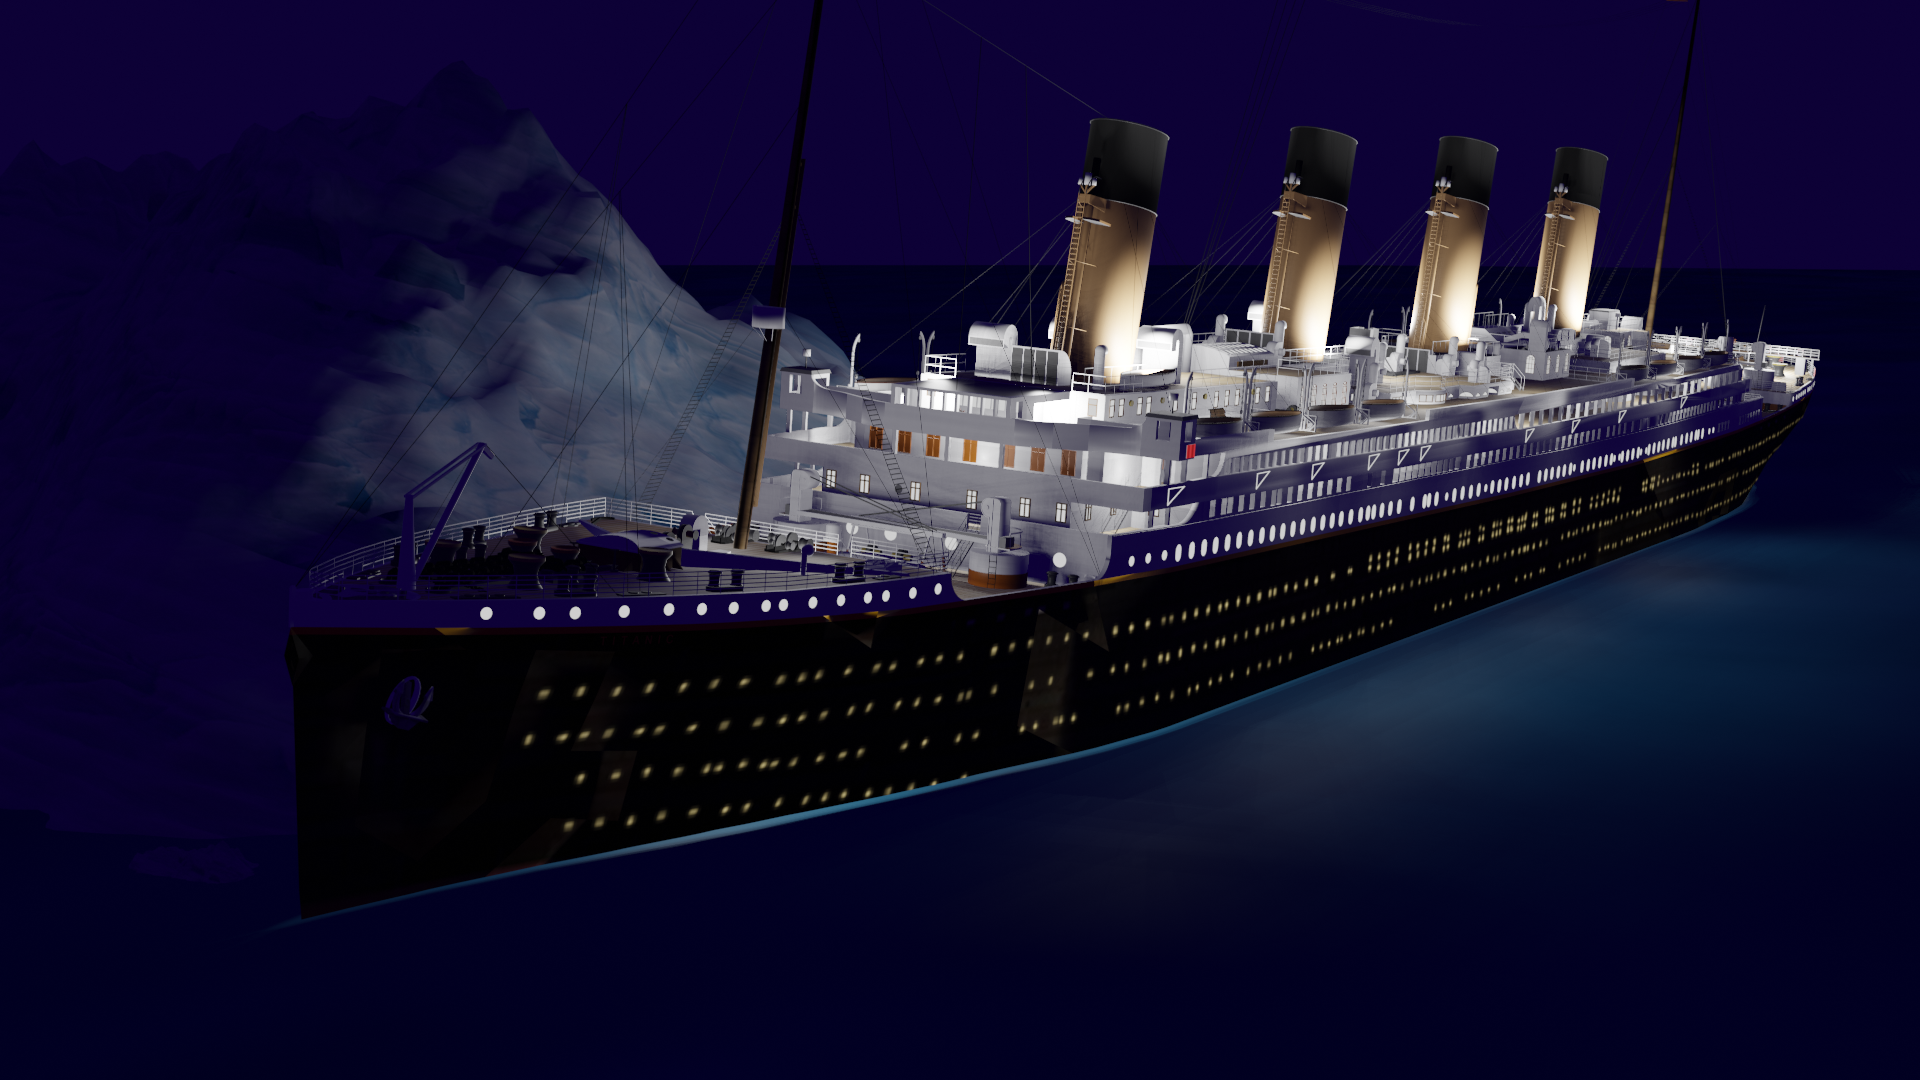 Foto dell'iceberg del Titanic